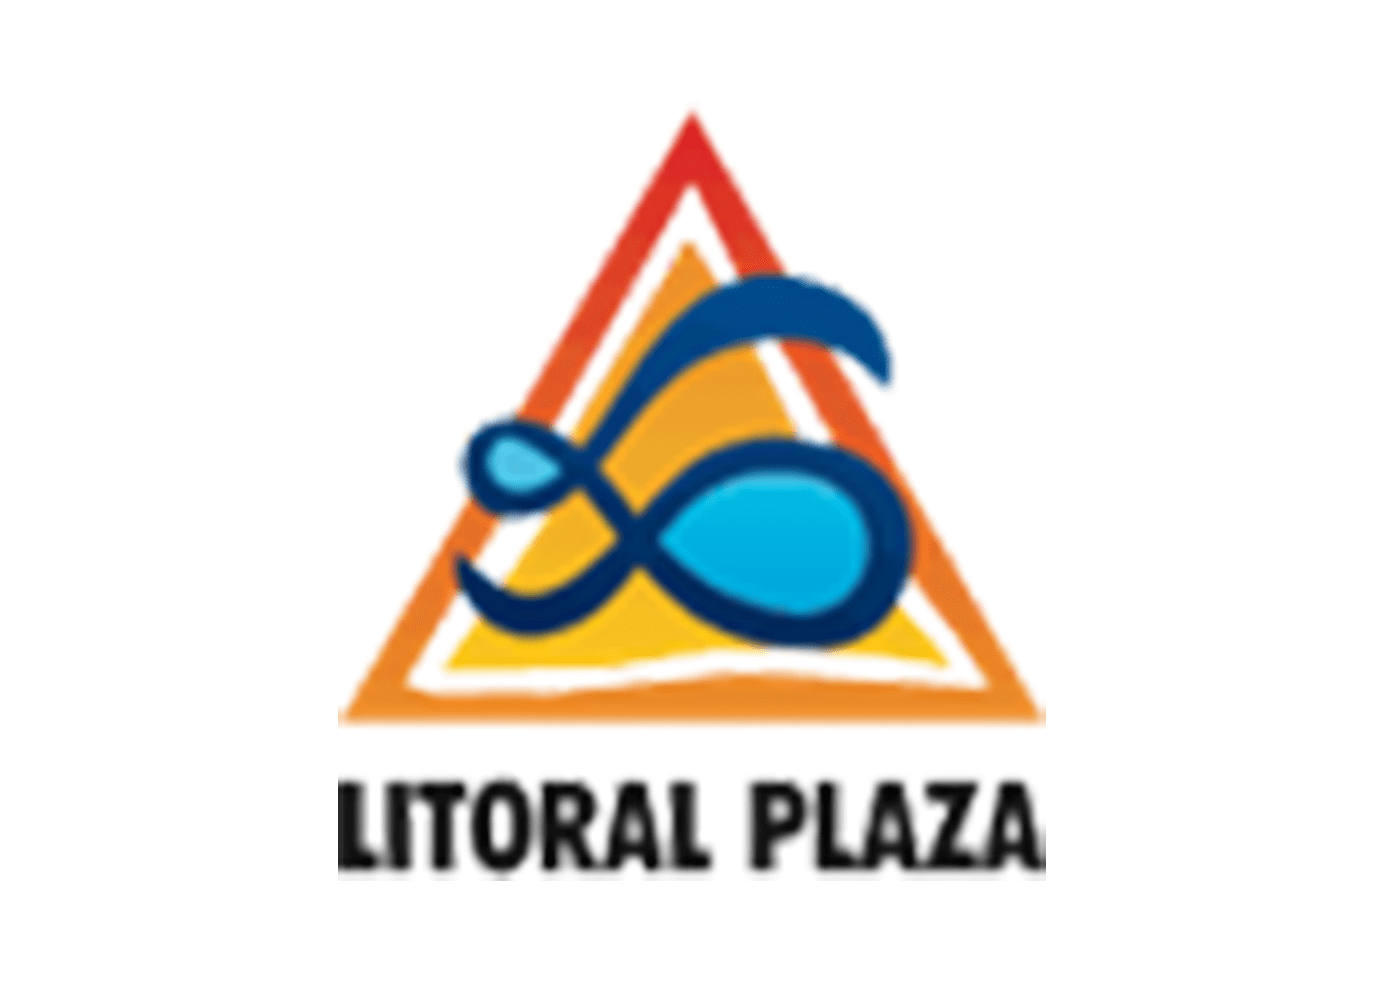 litoral plaza